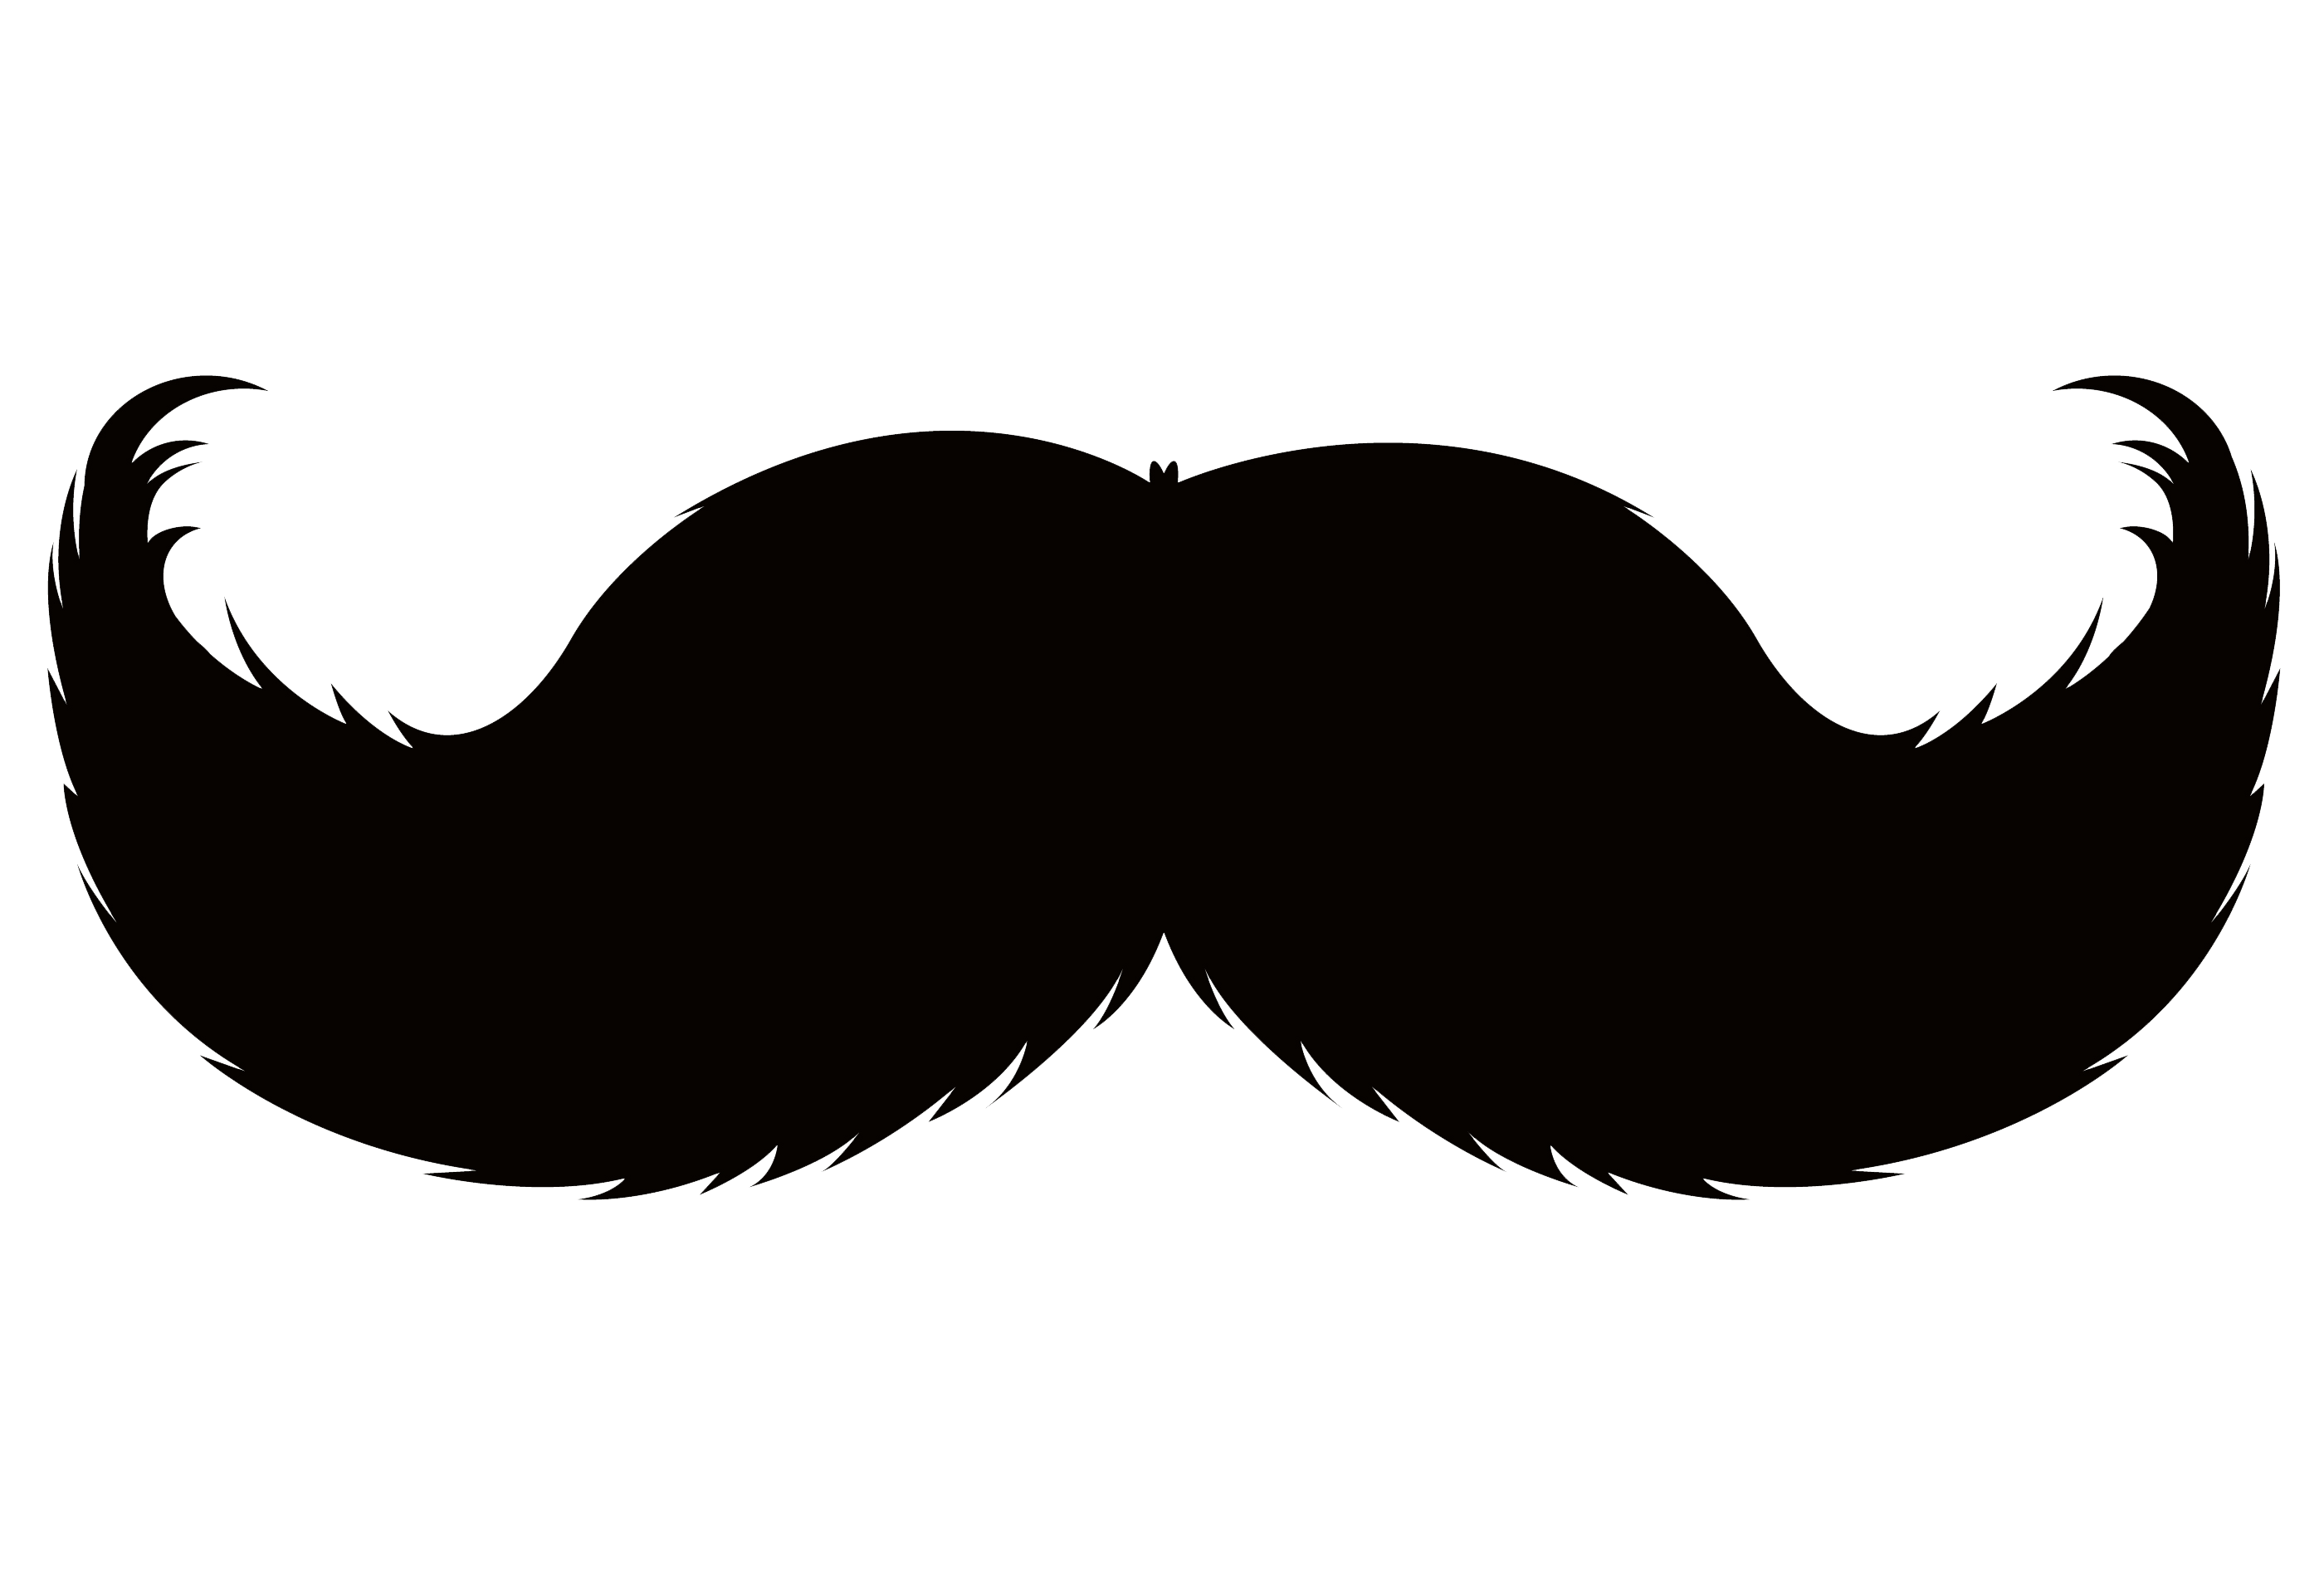 Mustache clipart - Clipground